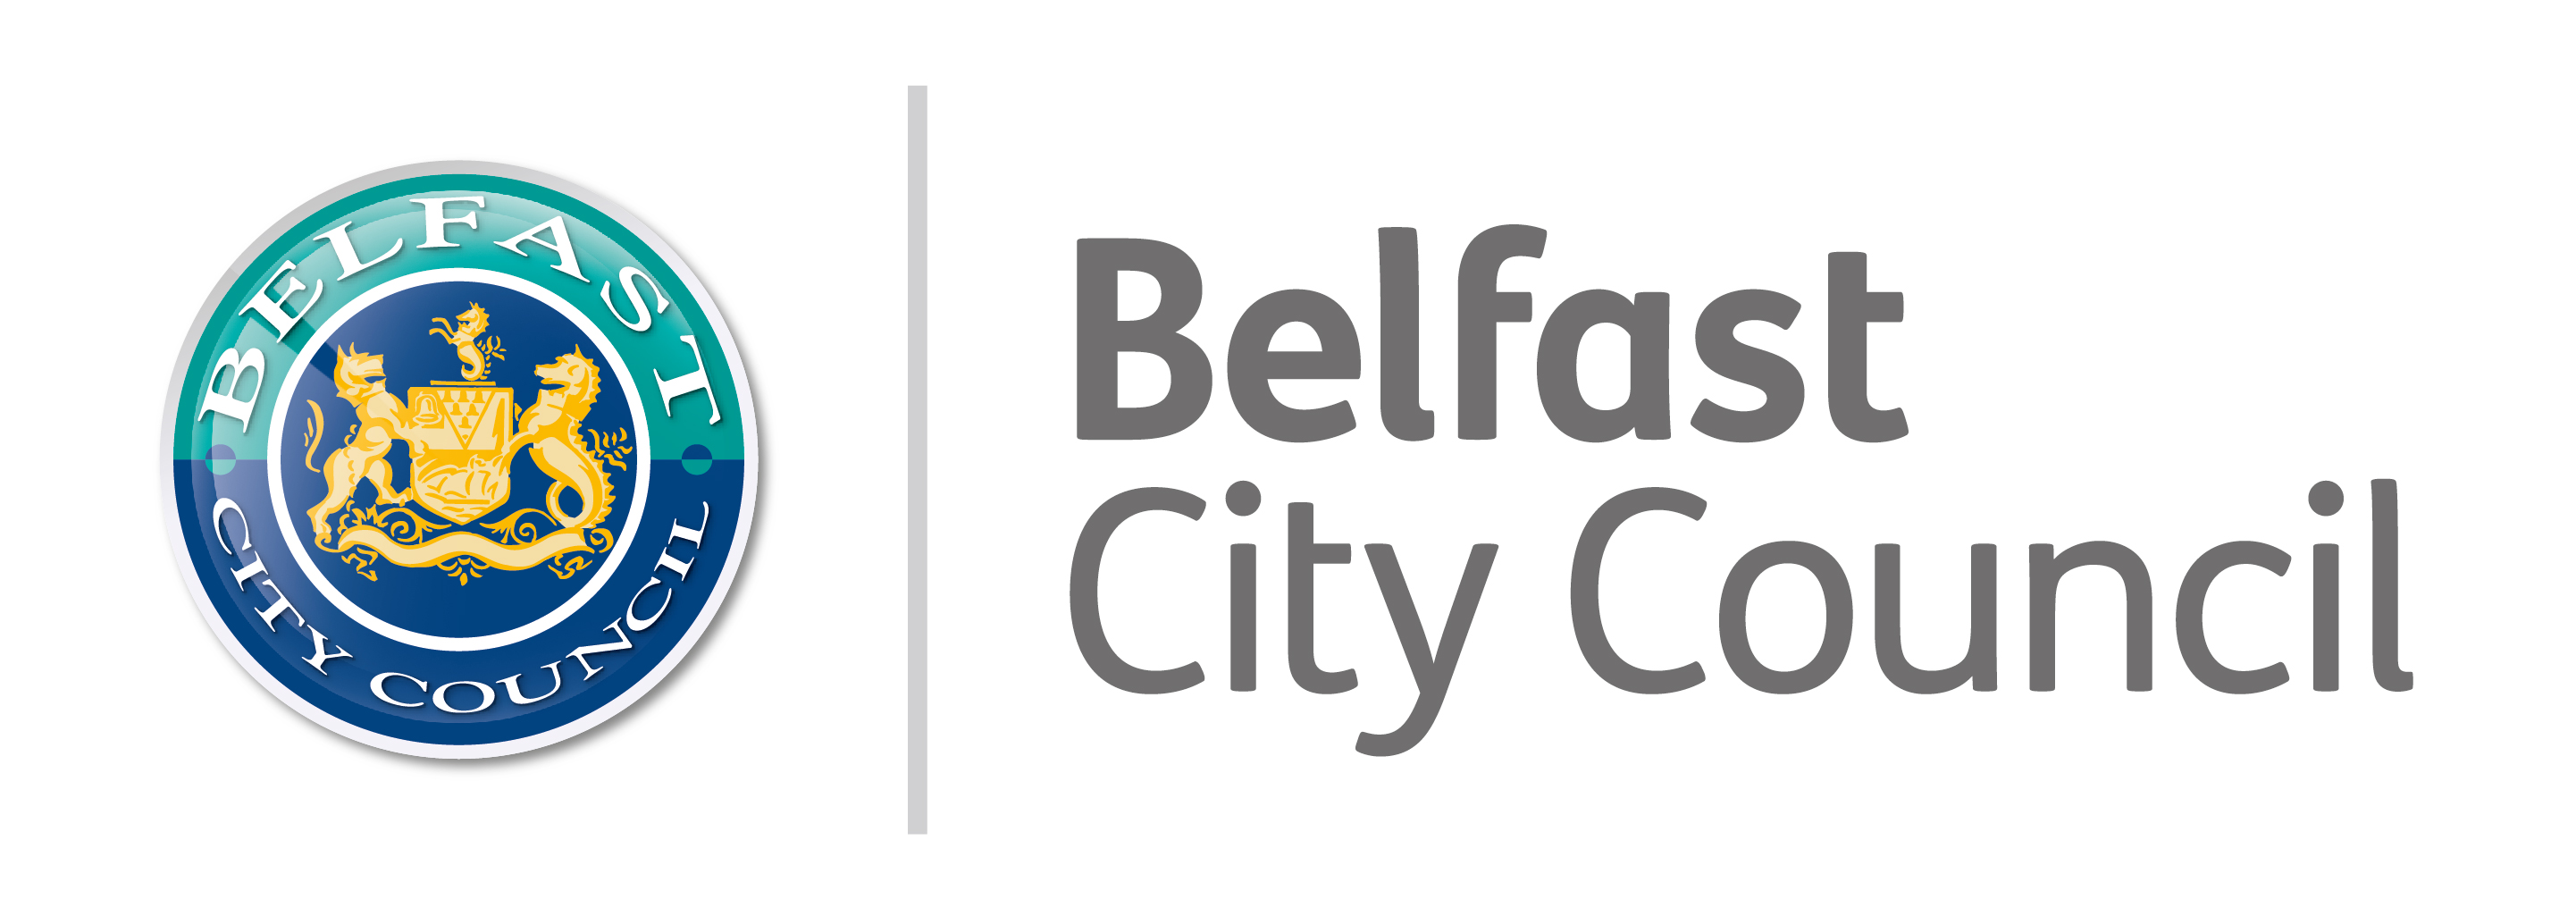 belfast-city-council-2015-master.jpg